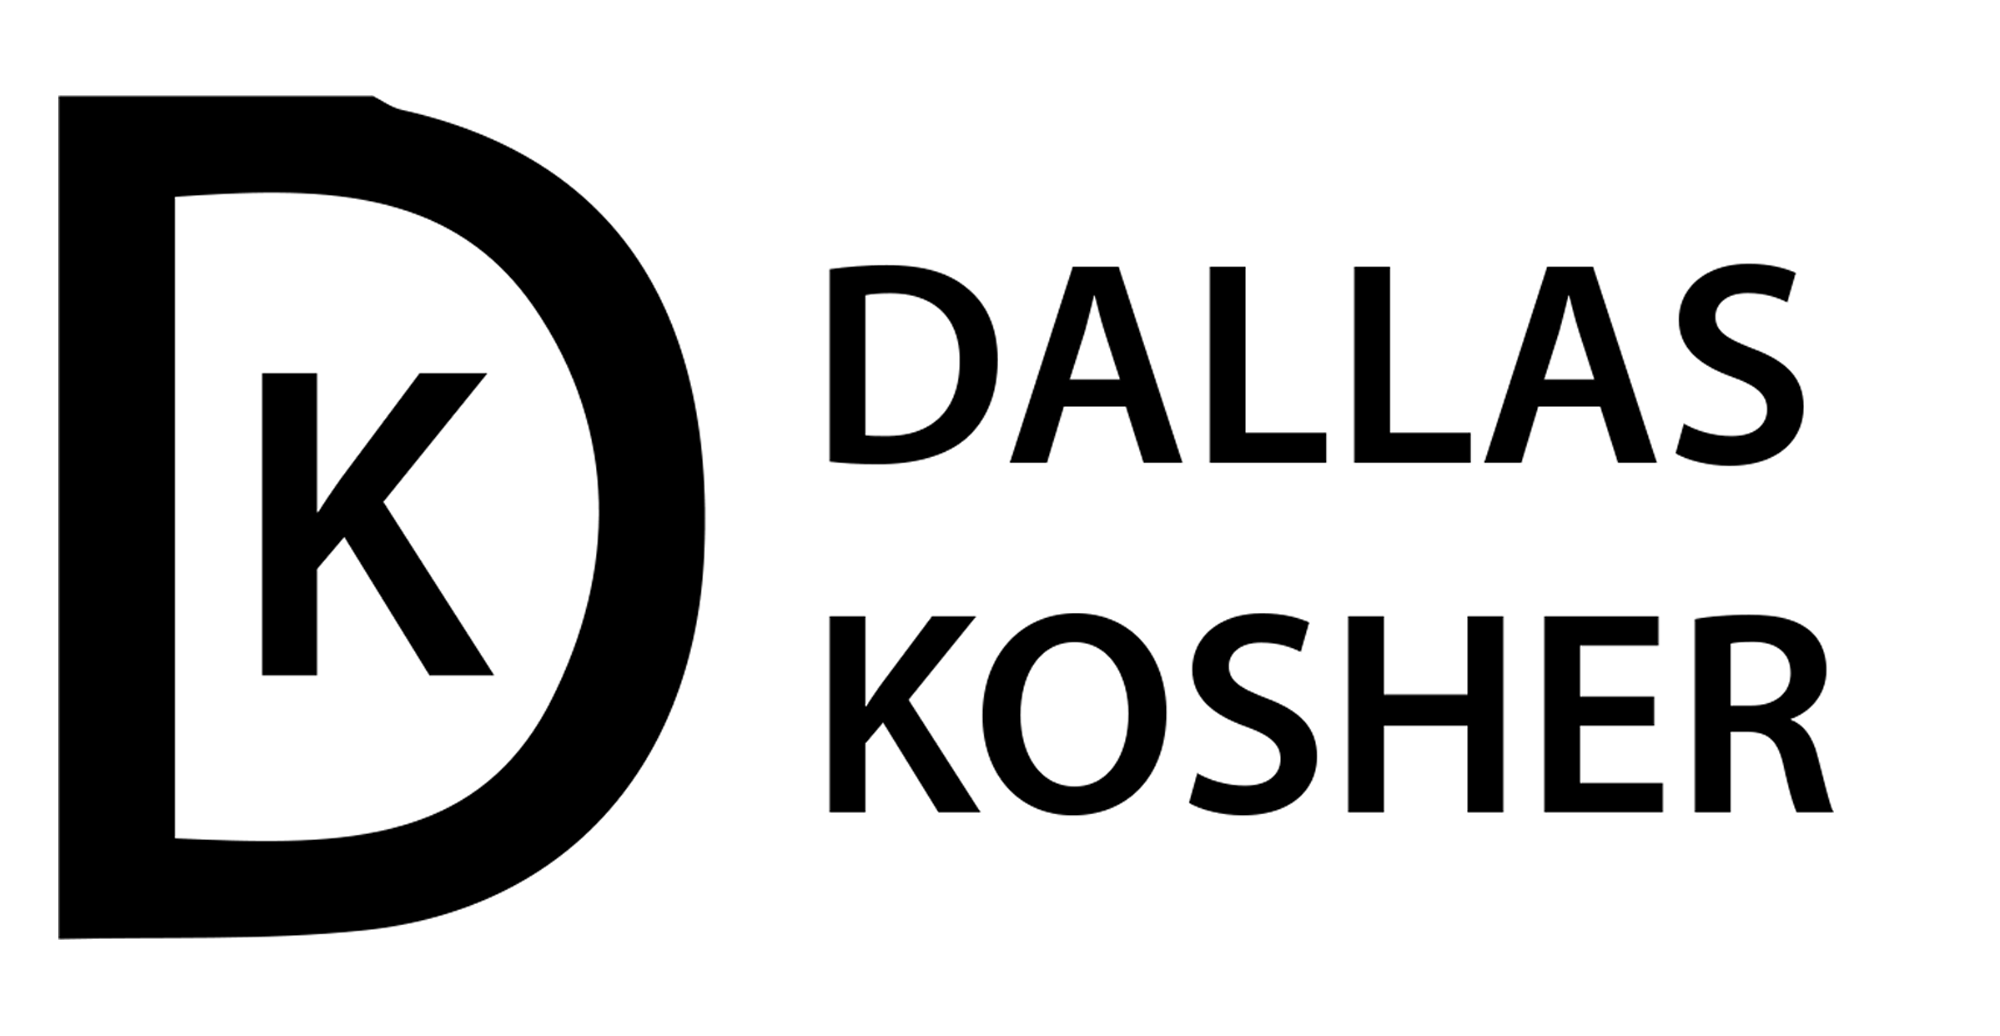 kosher symbols list